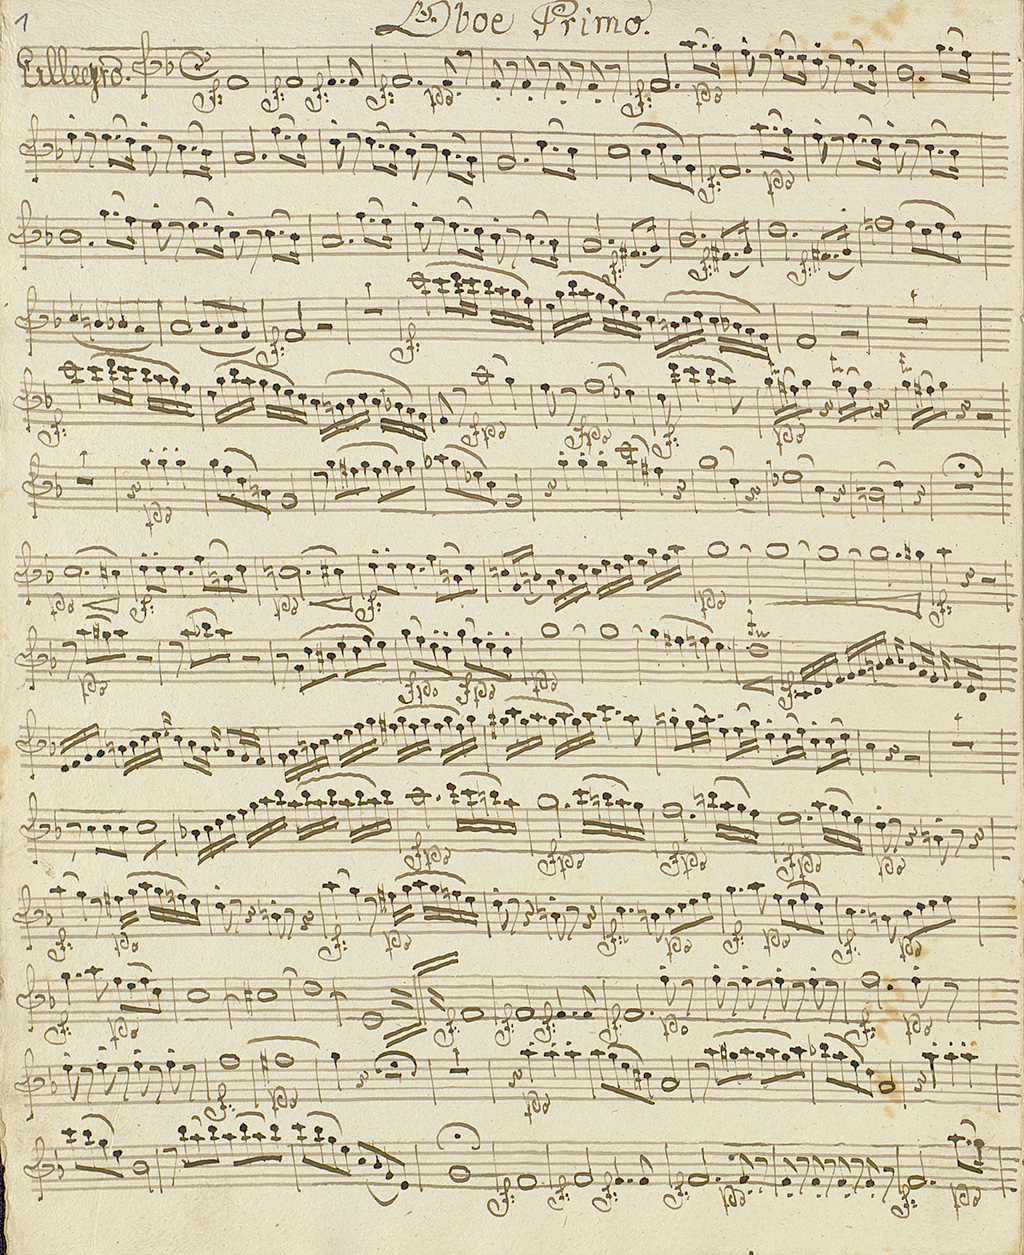 Zu sehen ist eine Notenseite aus den Divertimentos von Wolfgang Amadeus Mozart in der Bearbeitung von Franz Josef Rosinack. Entstanden ist die Notenhandschrift um 1800. 